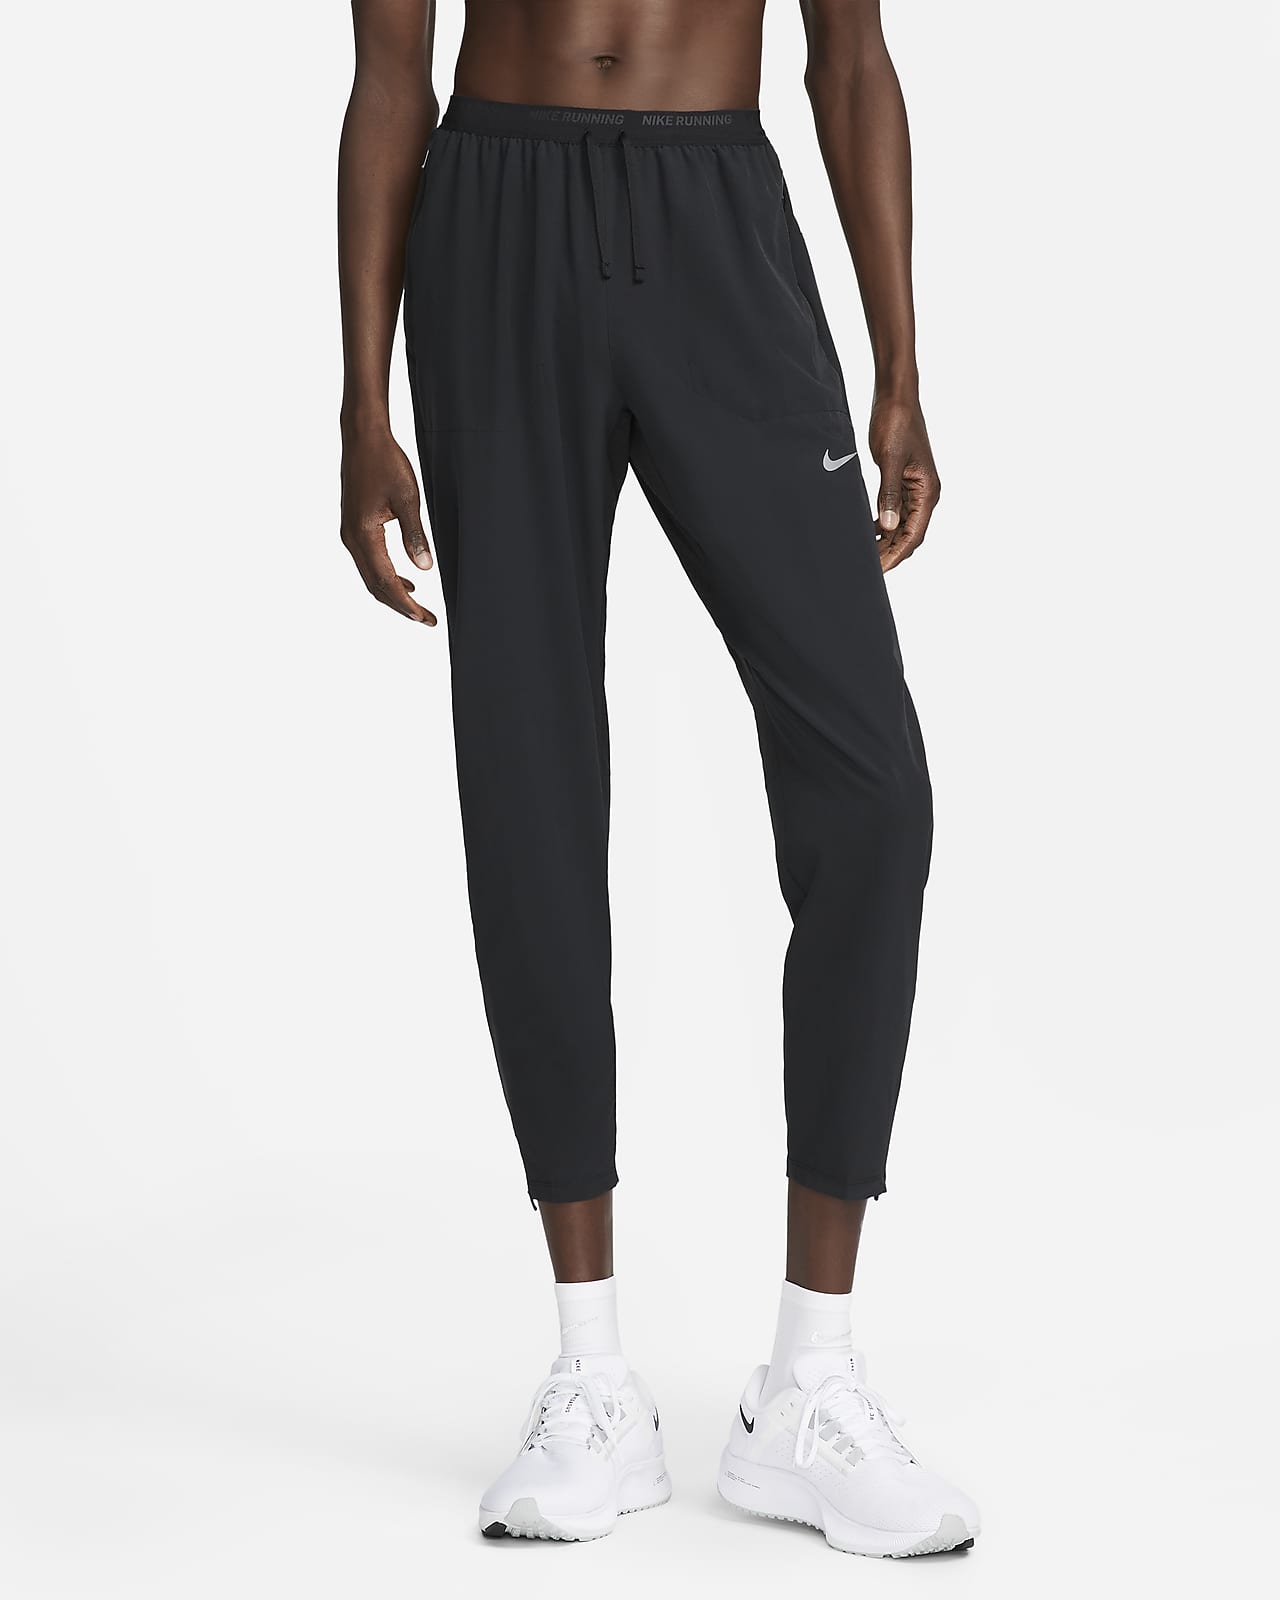 Ανδρικό υφαντό παντελόνι για τρέξιμο Dri-FIT Nike Phenom